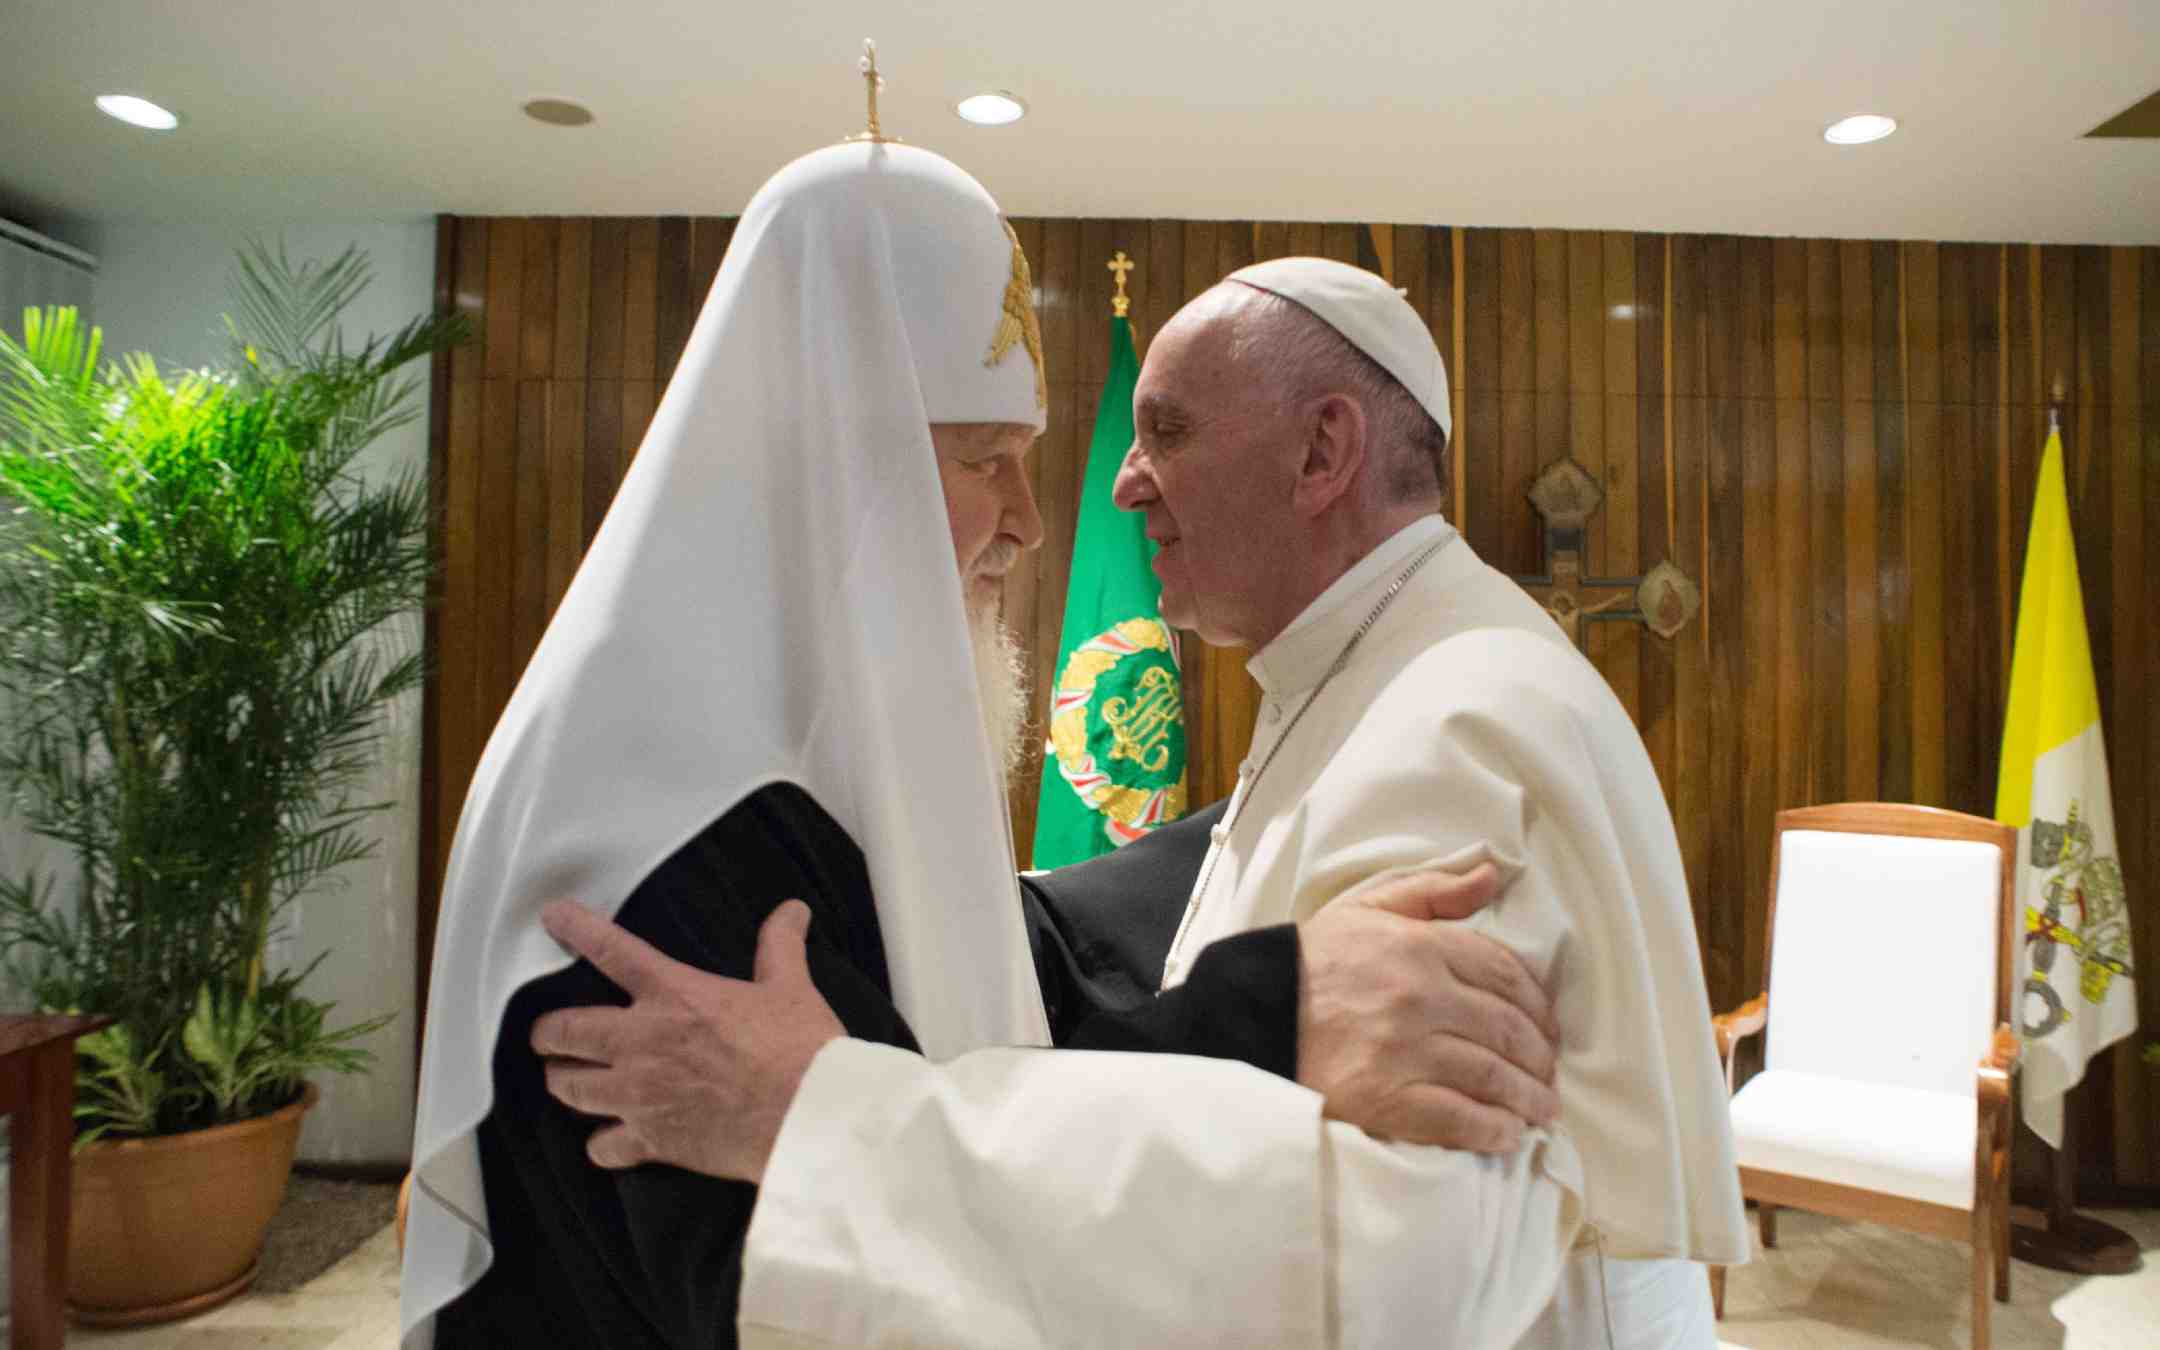 Paavi ja patriarkka Kirill syleilevät toisiaan lentokentällä Kuubassa 12. helmikuuta 2016